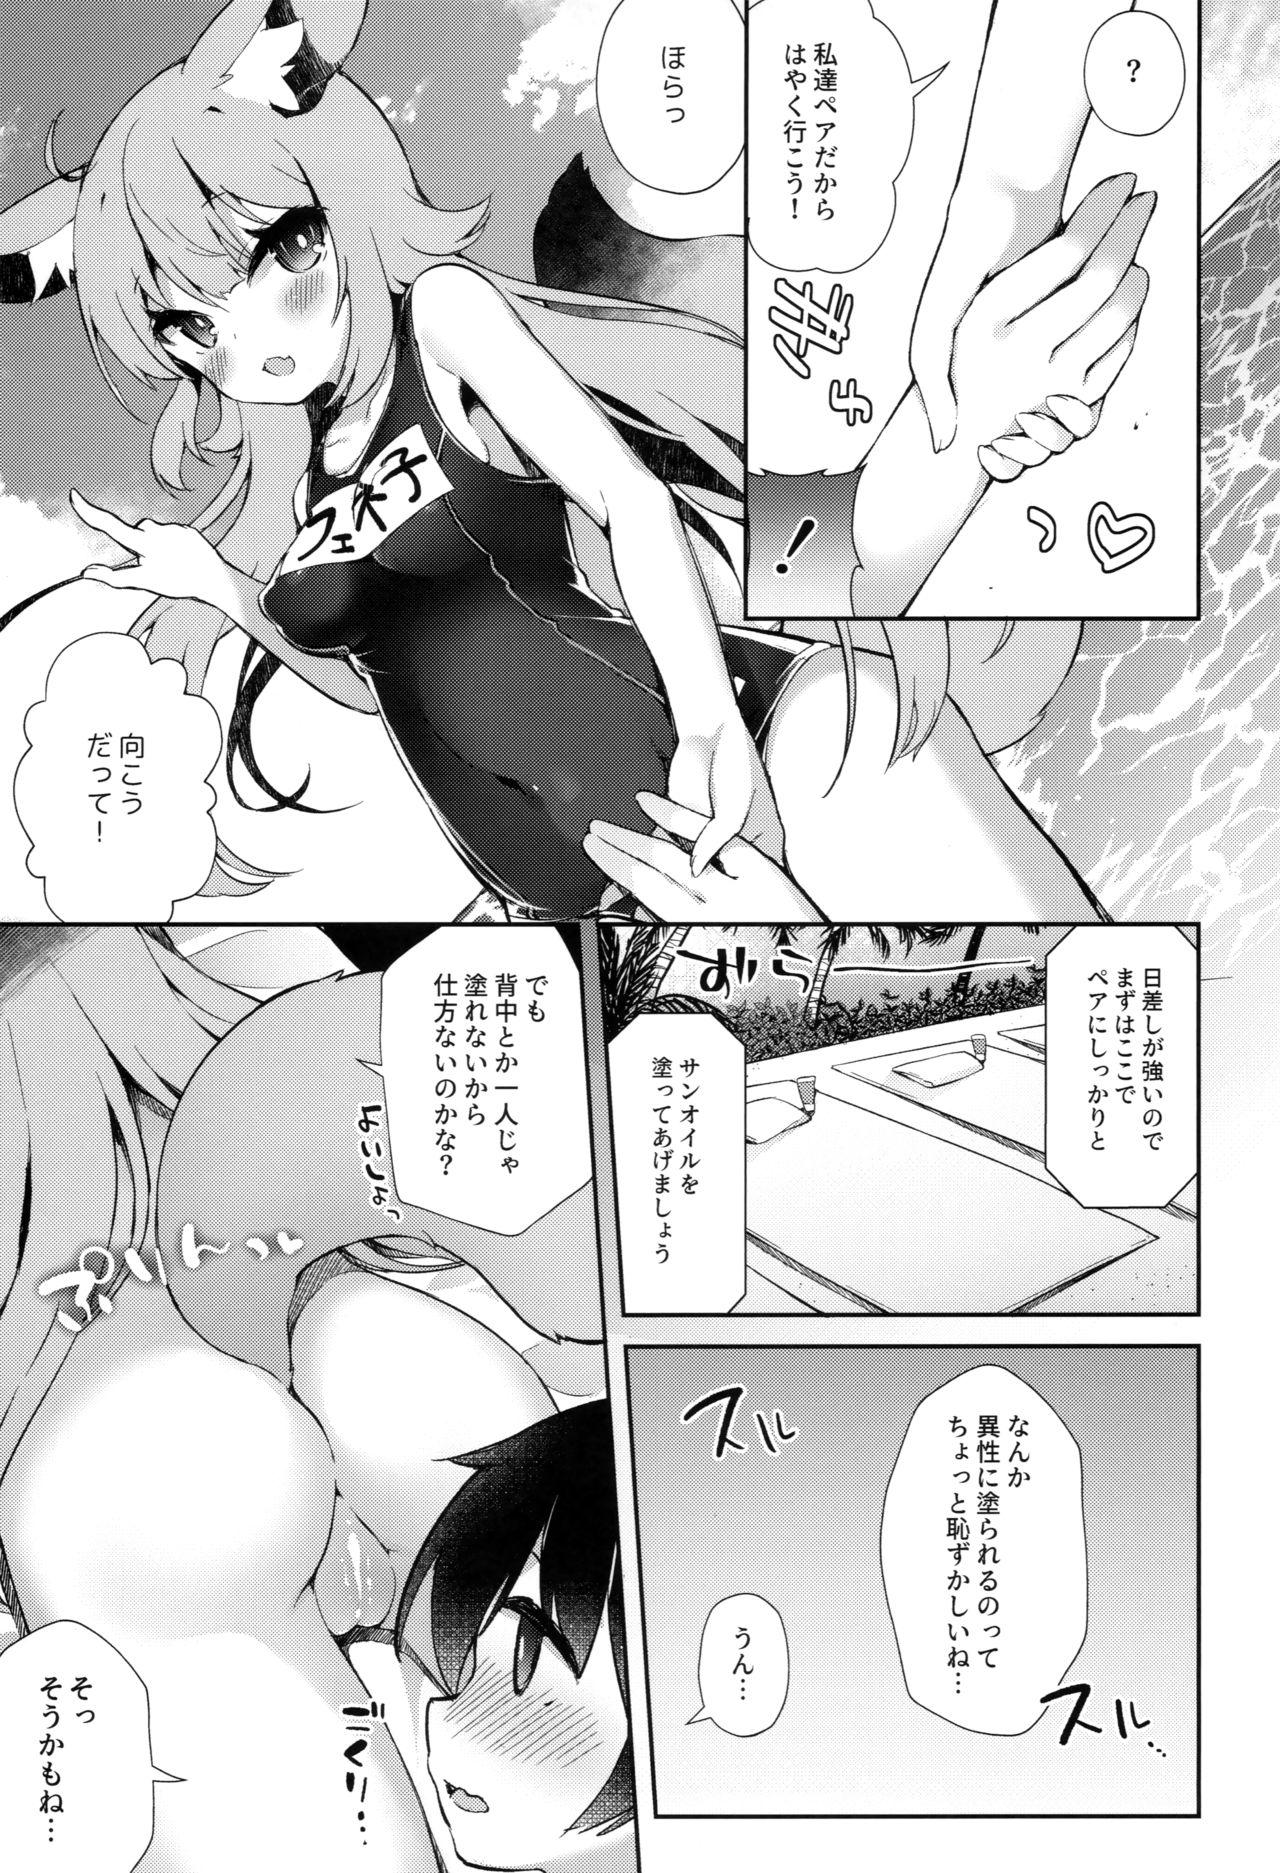 Dick Suckers Fennec Musume Summer! - Original X - Page 6